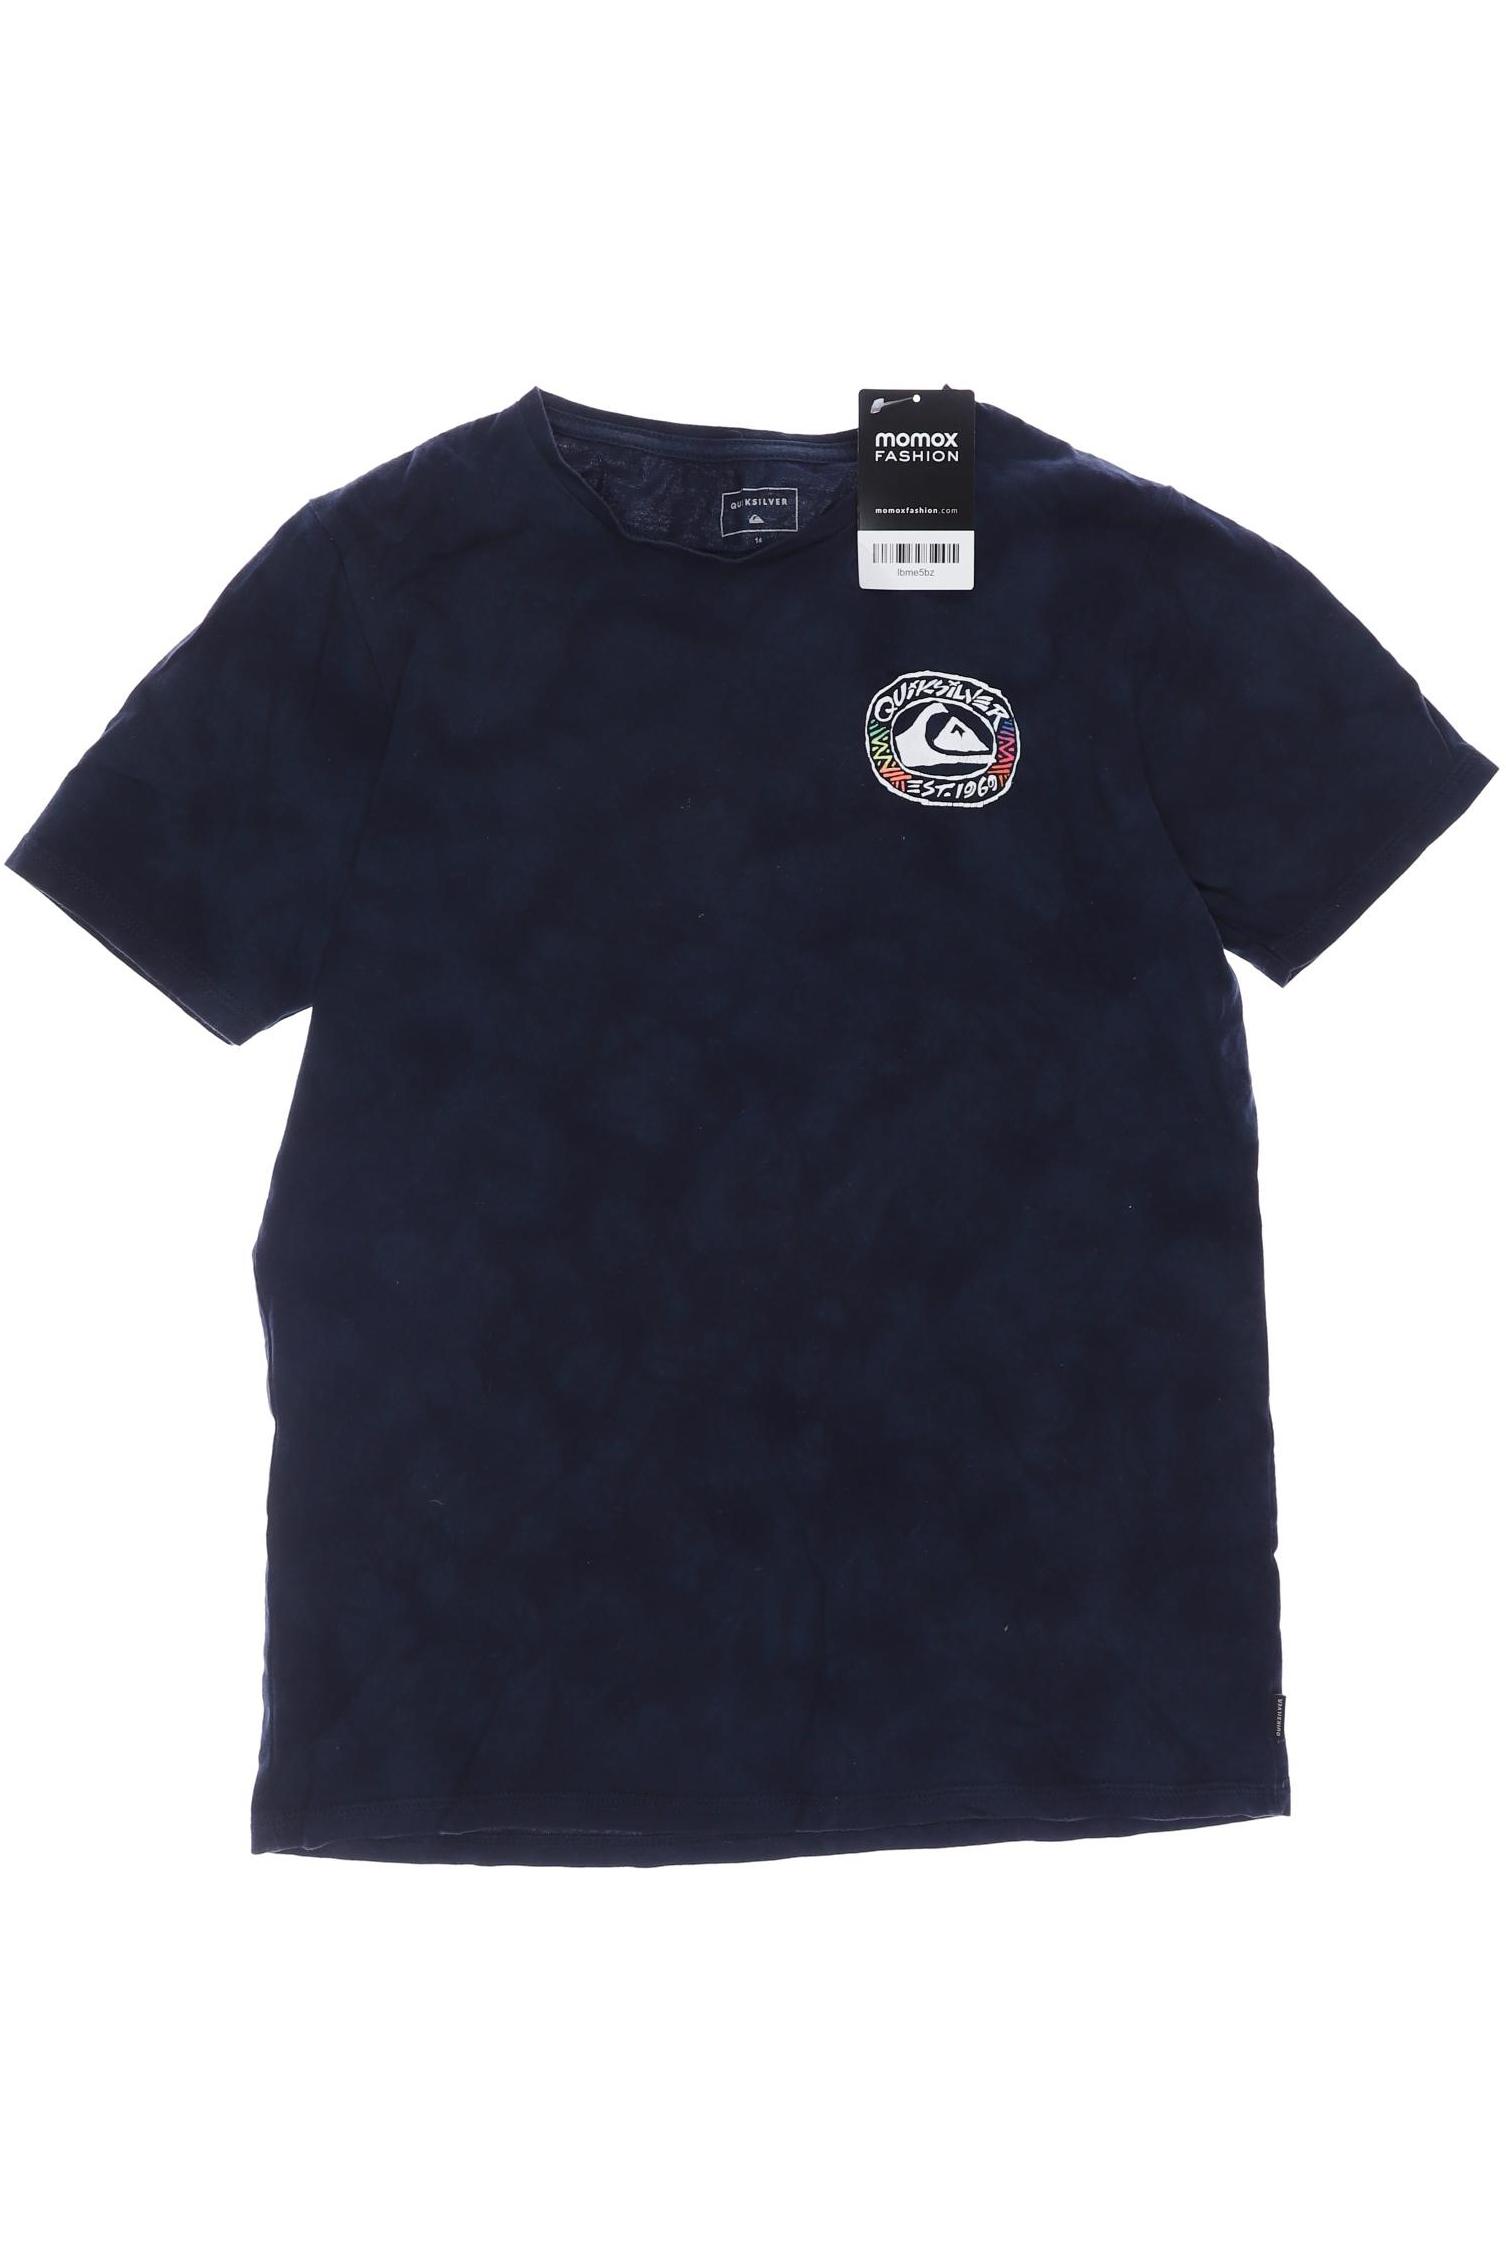 QUIKSILVER Jungen T-Shirt, marineblau von Quiksilver